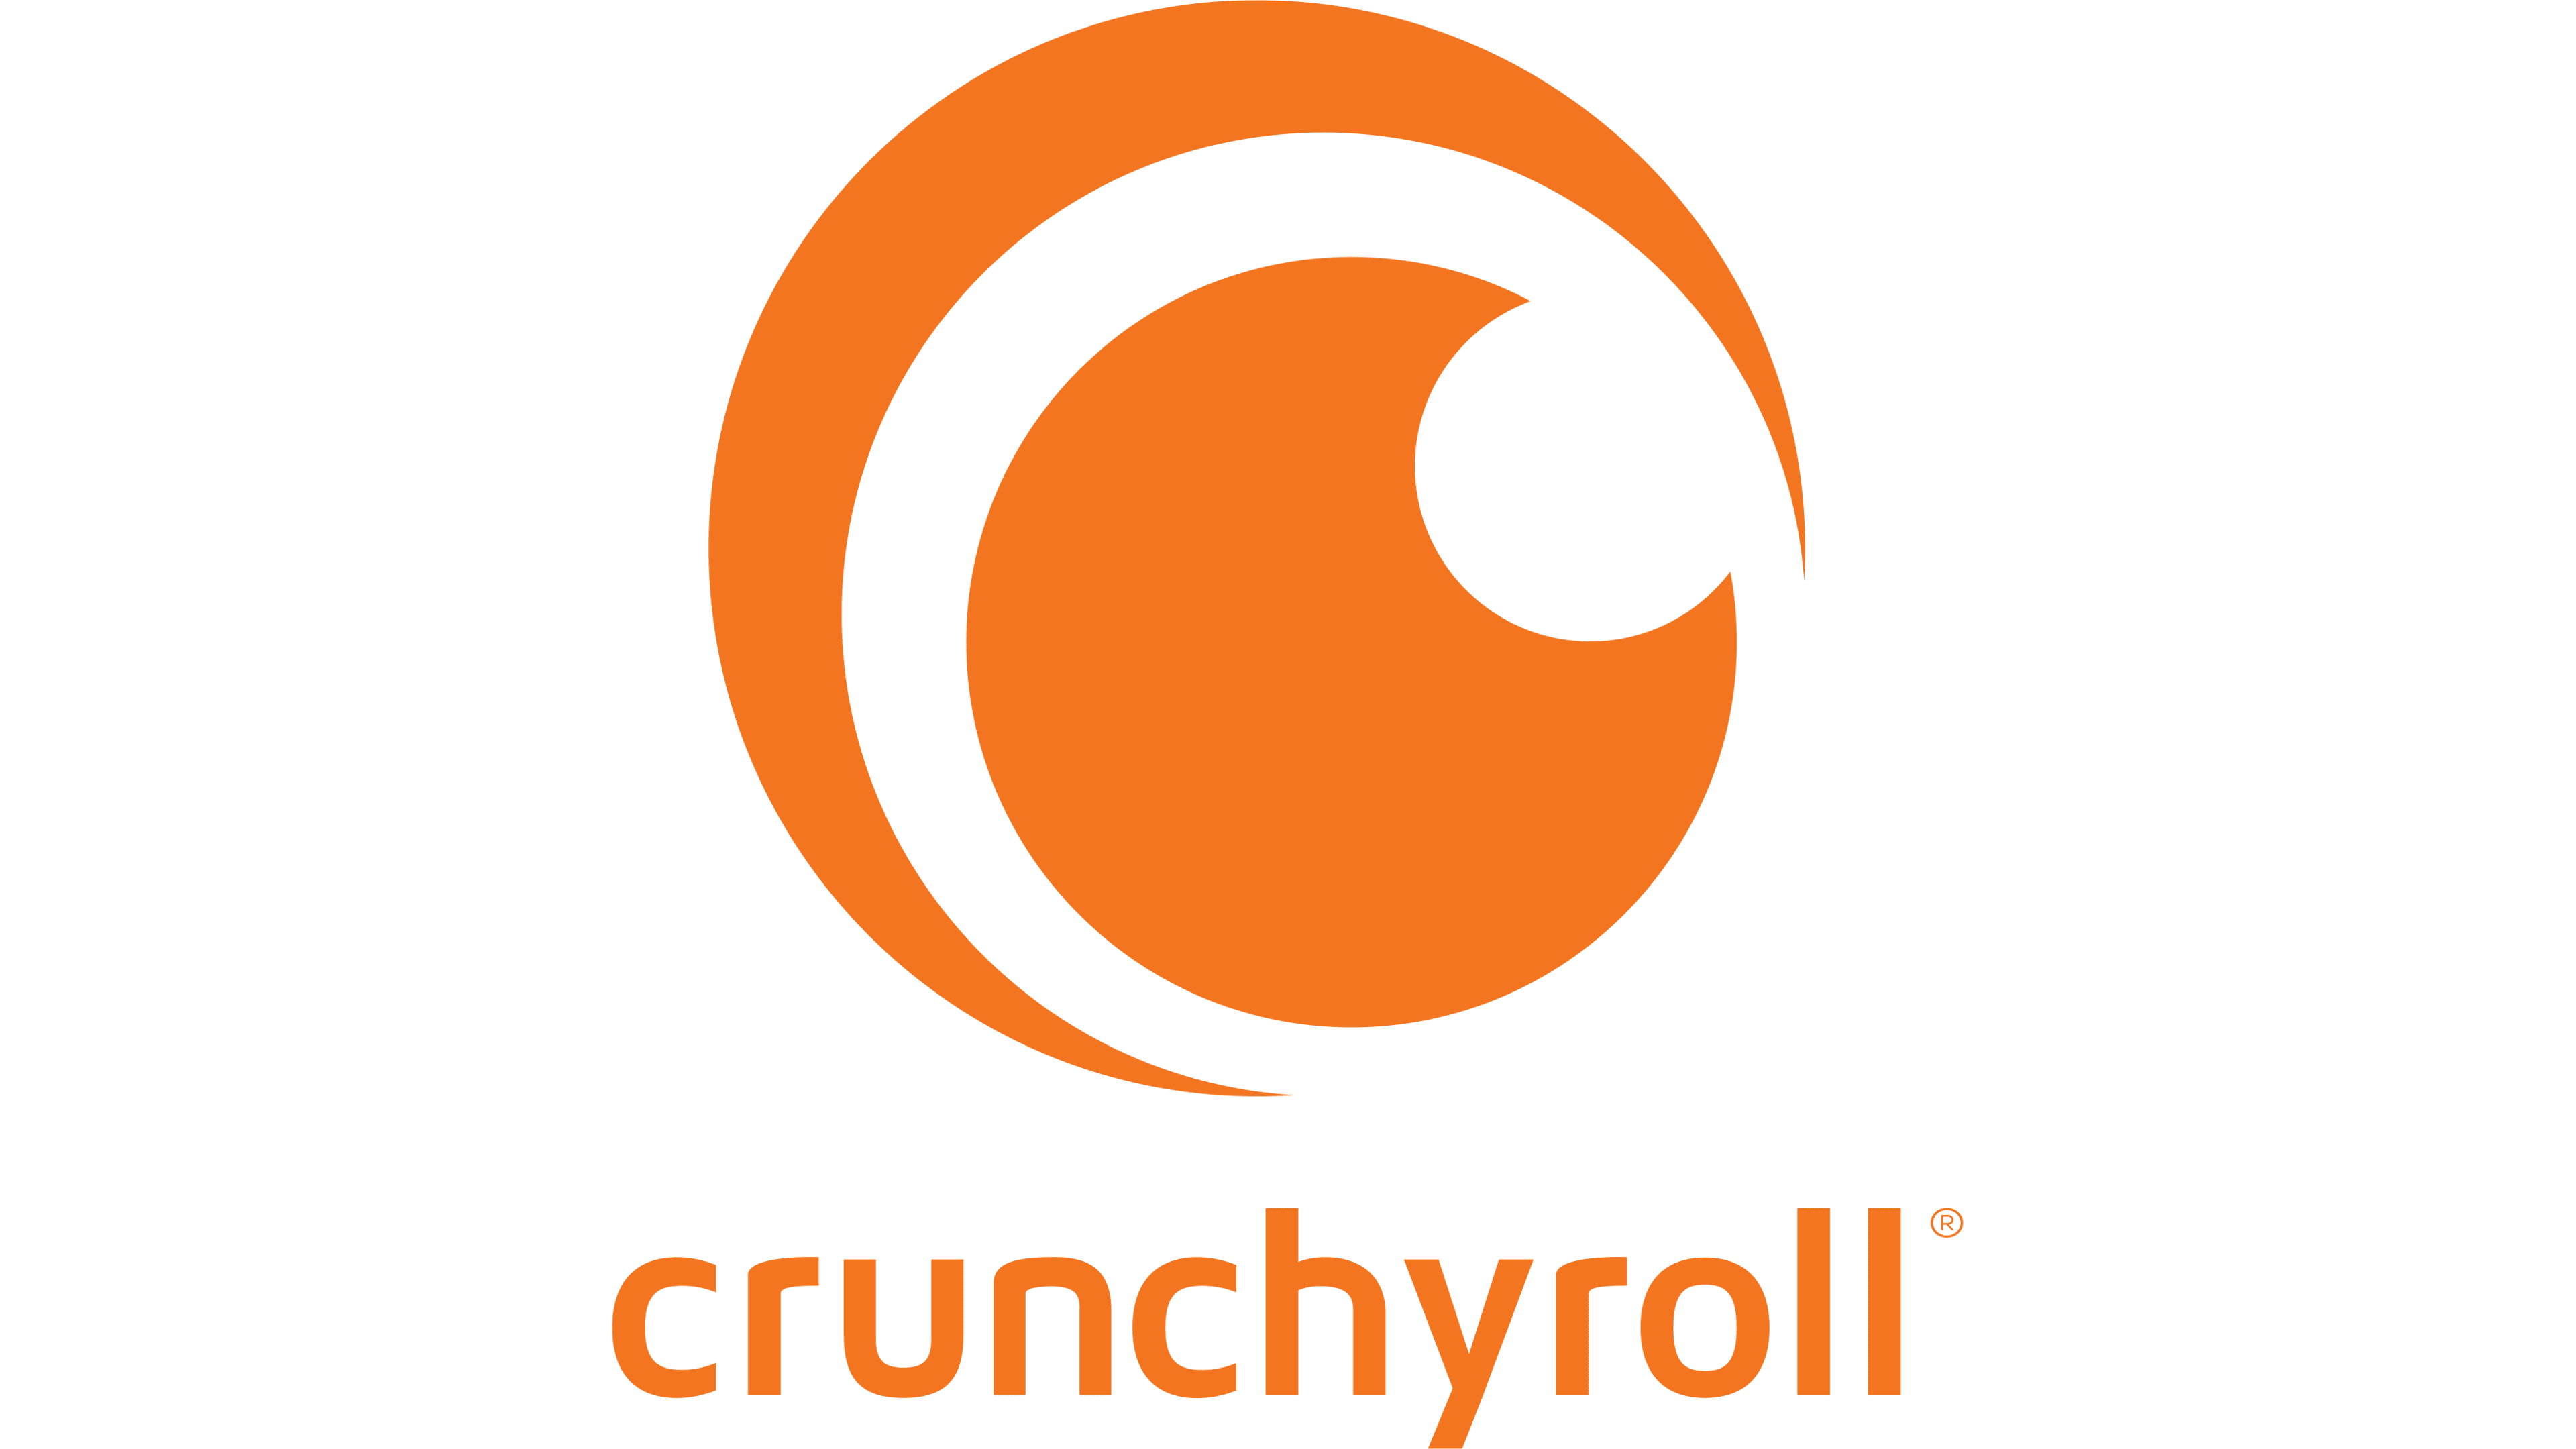 Since when is high school dxd on crunchyroll : r/Crunchyroll